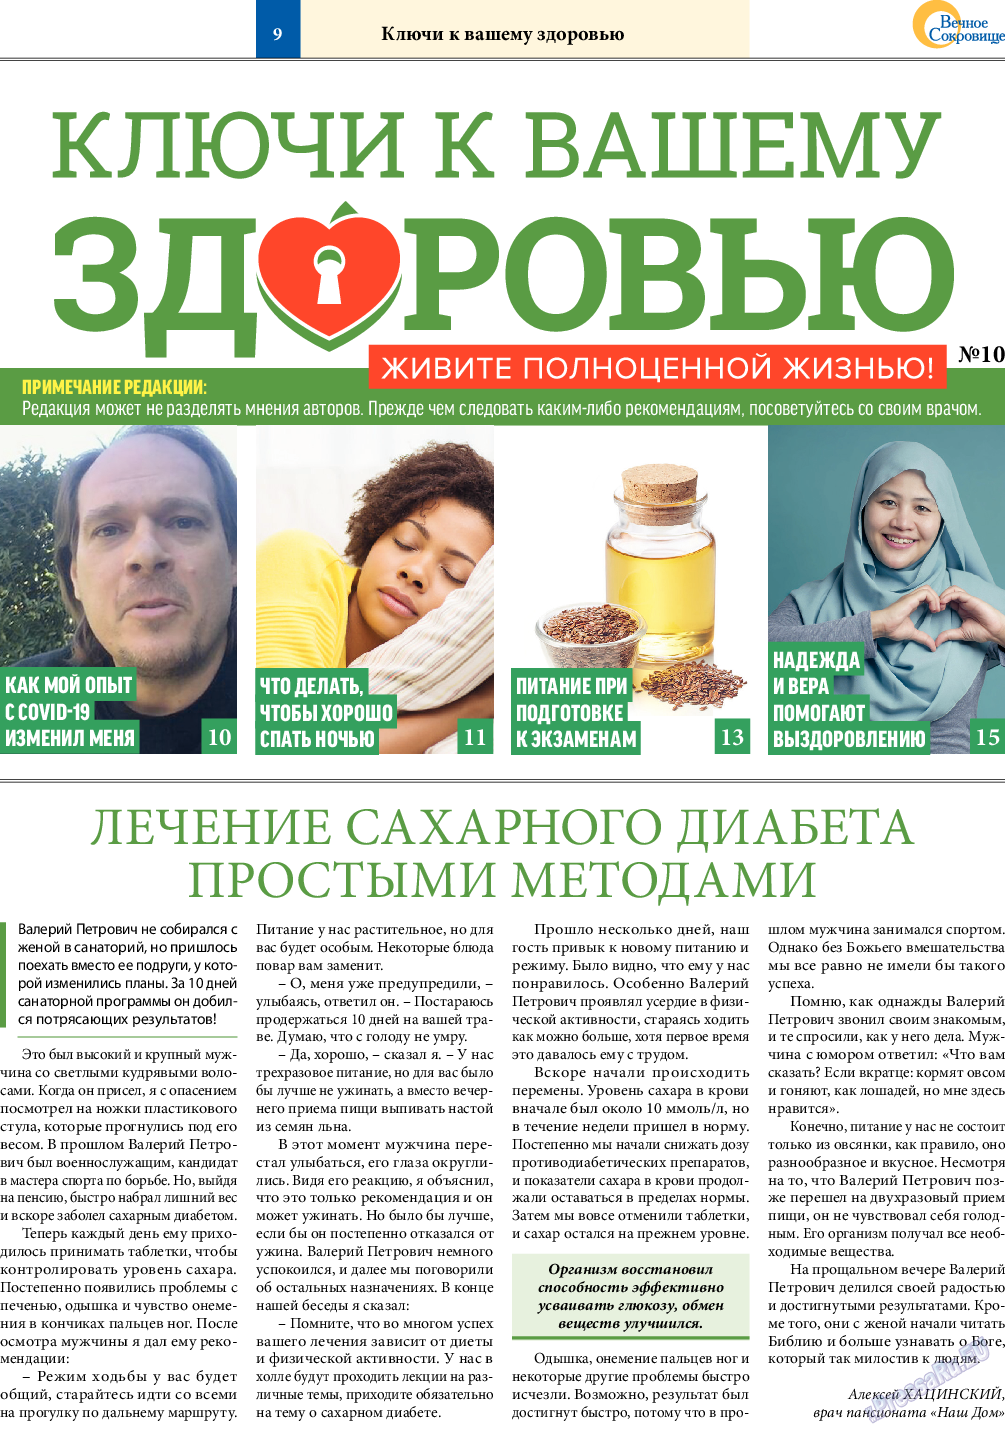 Вечное сокровище, газета. 2020 №3 стр.9